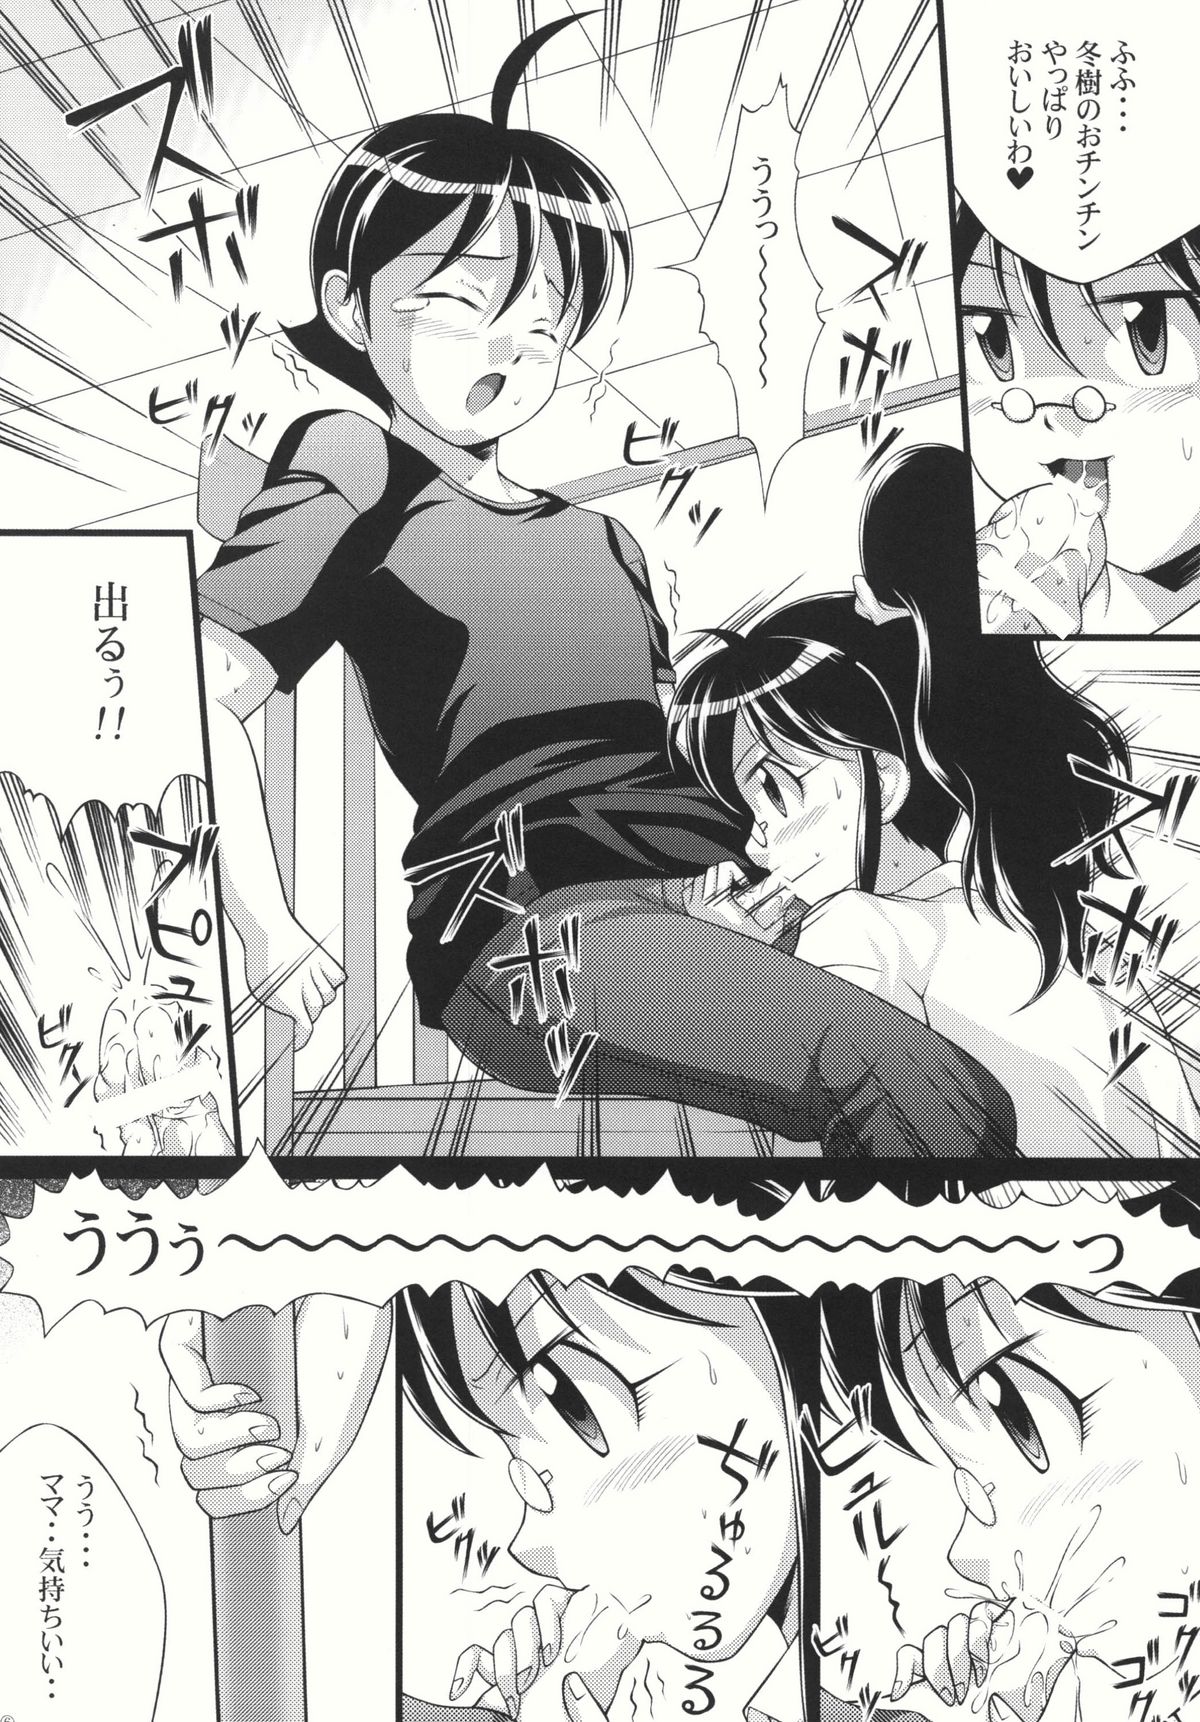 (SC38) [Light Pink (Various)] Chikyuujin Maruhi Seitai Chousa Houkokusho 4 (Keroro Gunsou [Sgt. Frog]) page 8 full